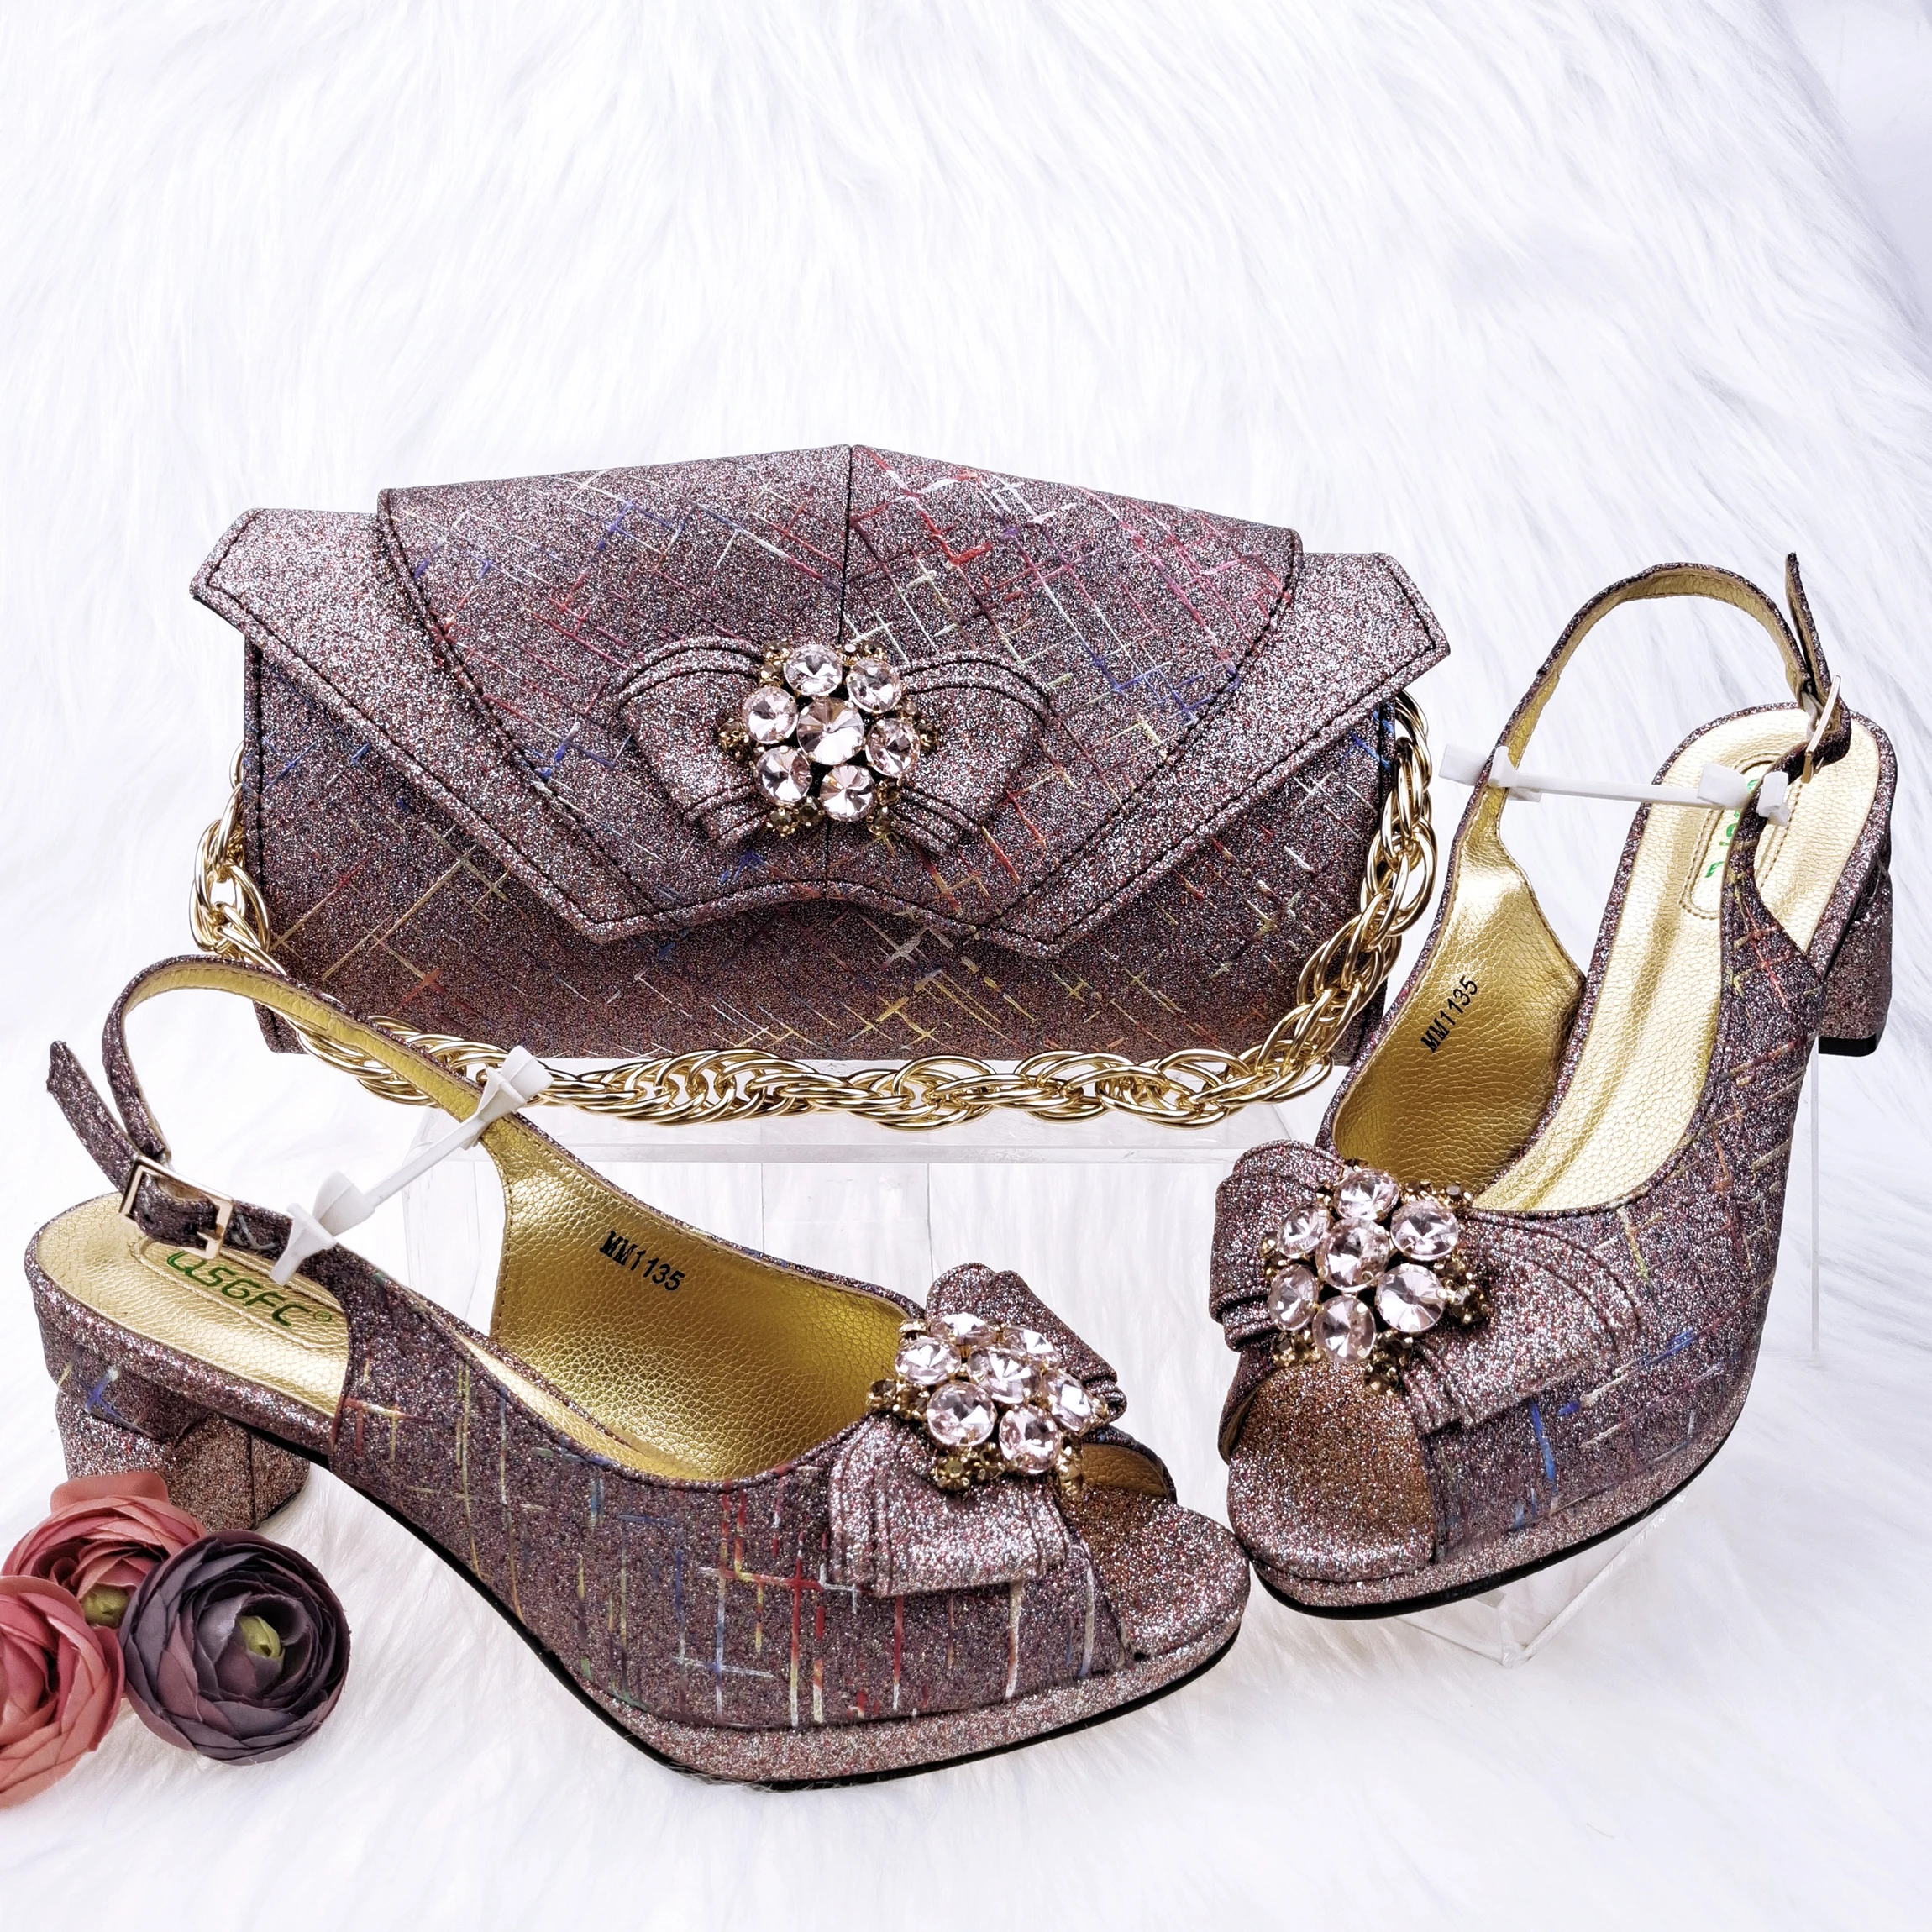 Conjunto de zapatos y bolsos de fiesta para mujer, con decoración especial de cristal y Metal, diseño italiano nigeriano, gran oferta